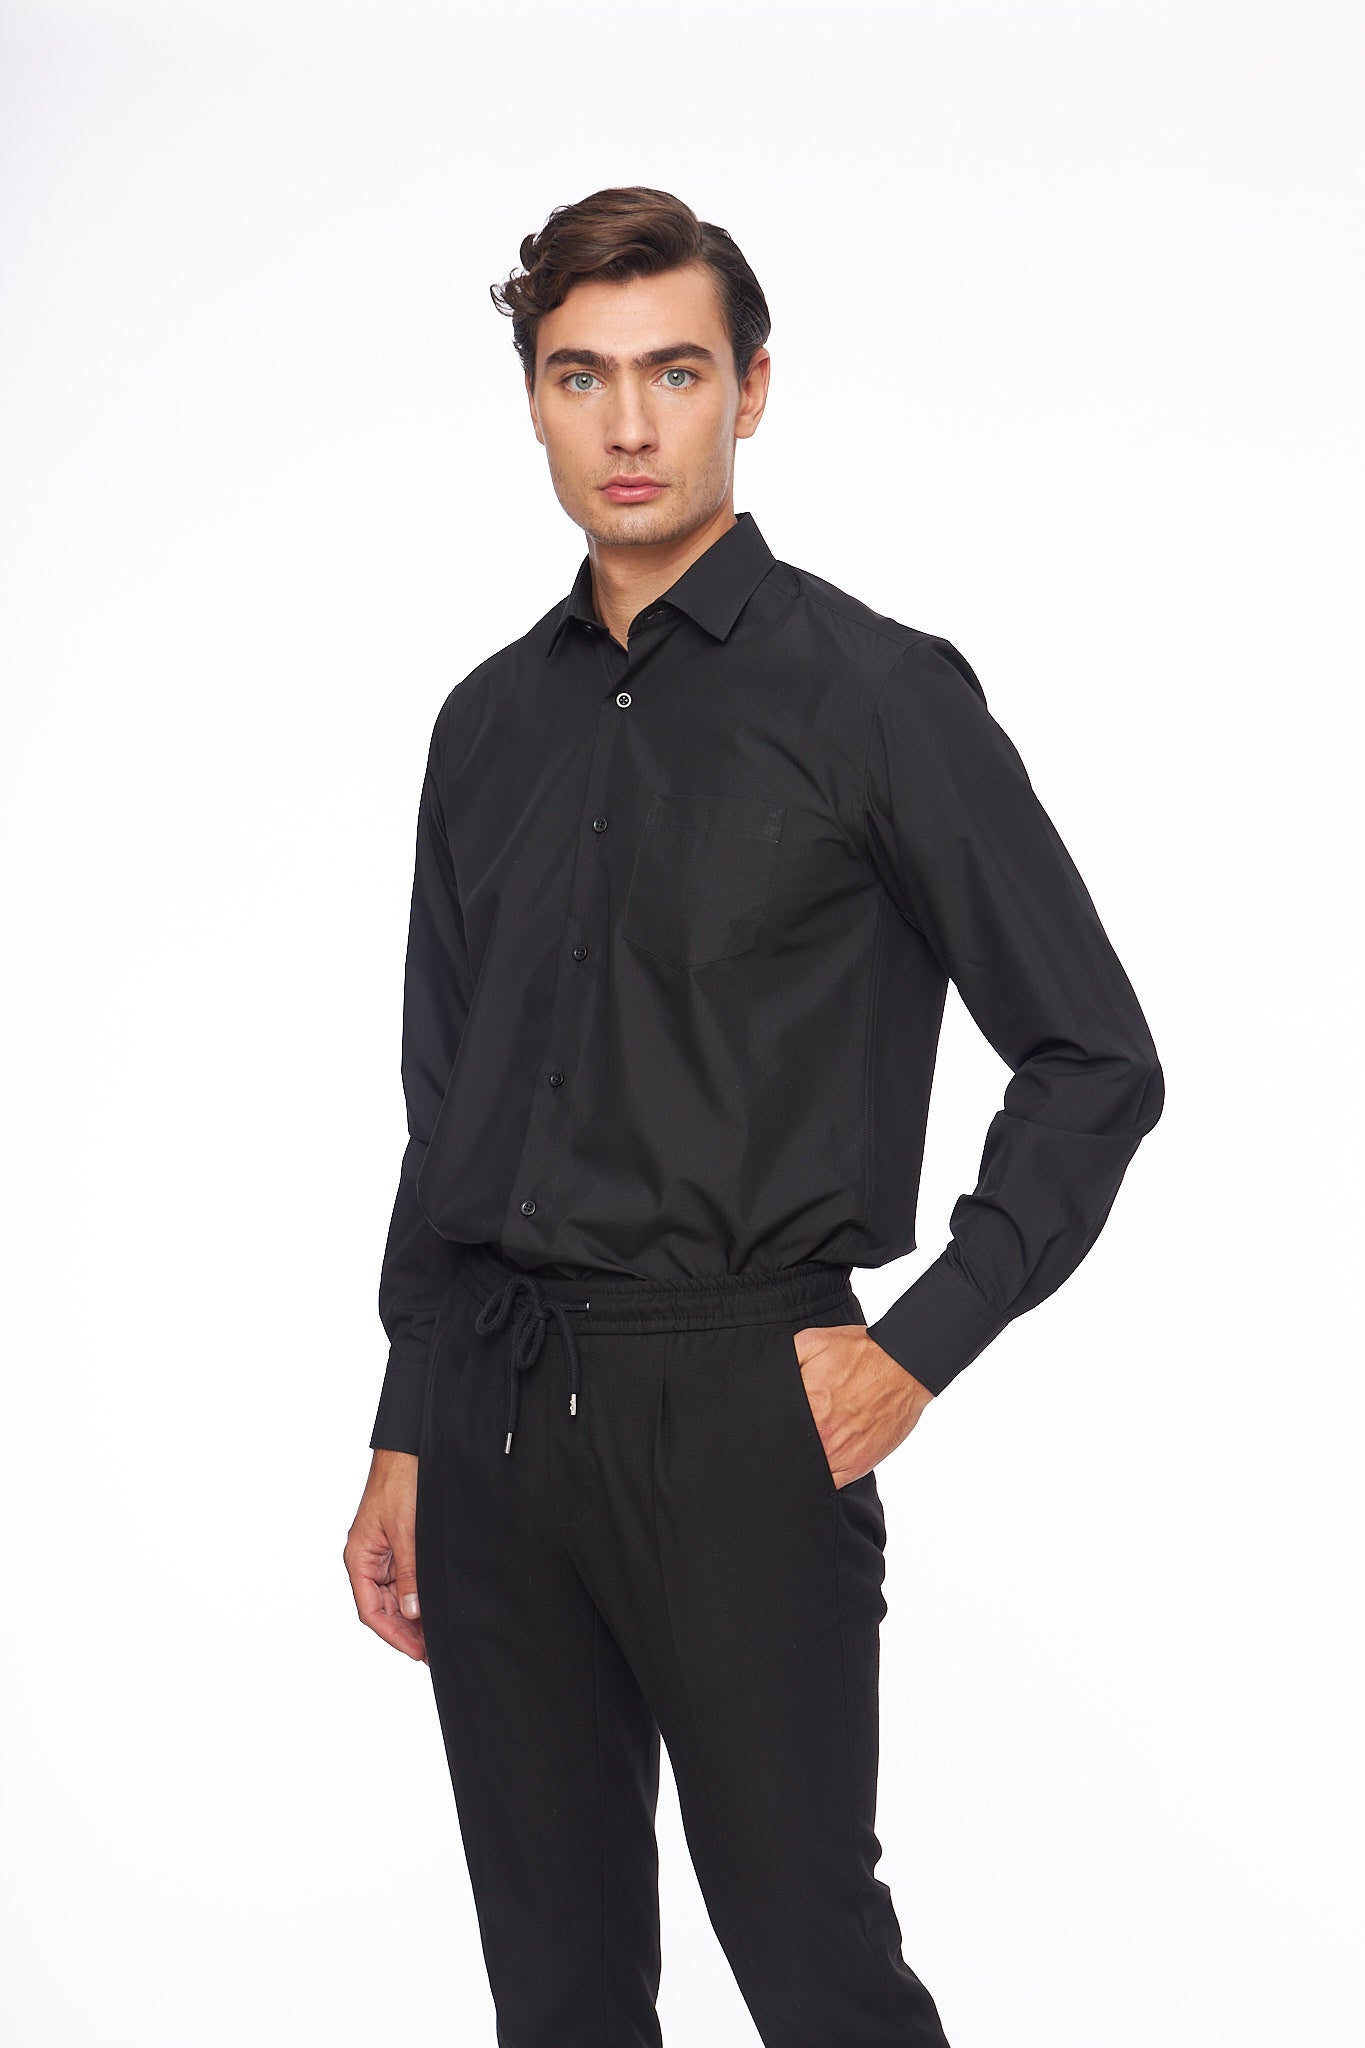 Мъжка черна риза с дълъг ръкав, права конструкция, джоб на гърдите.